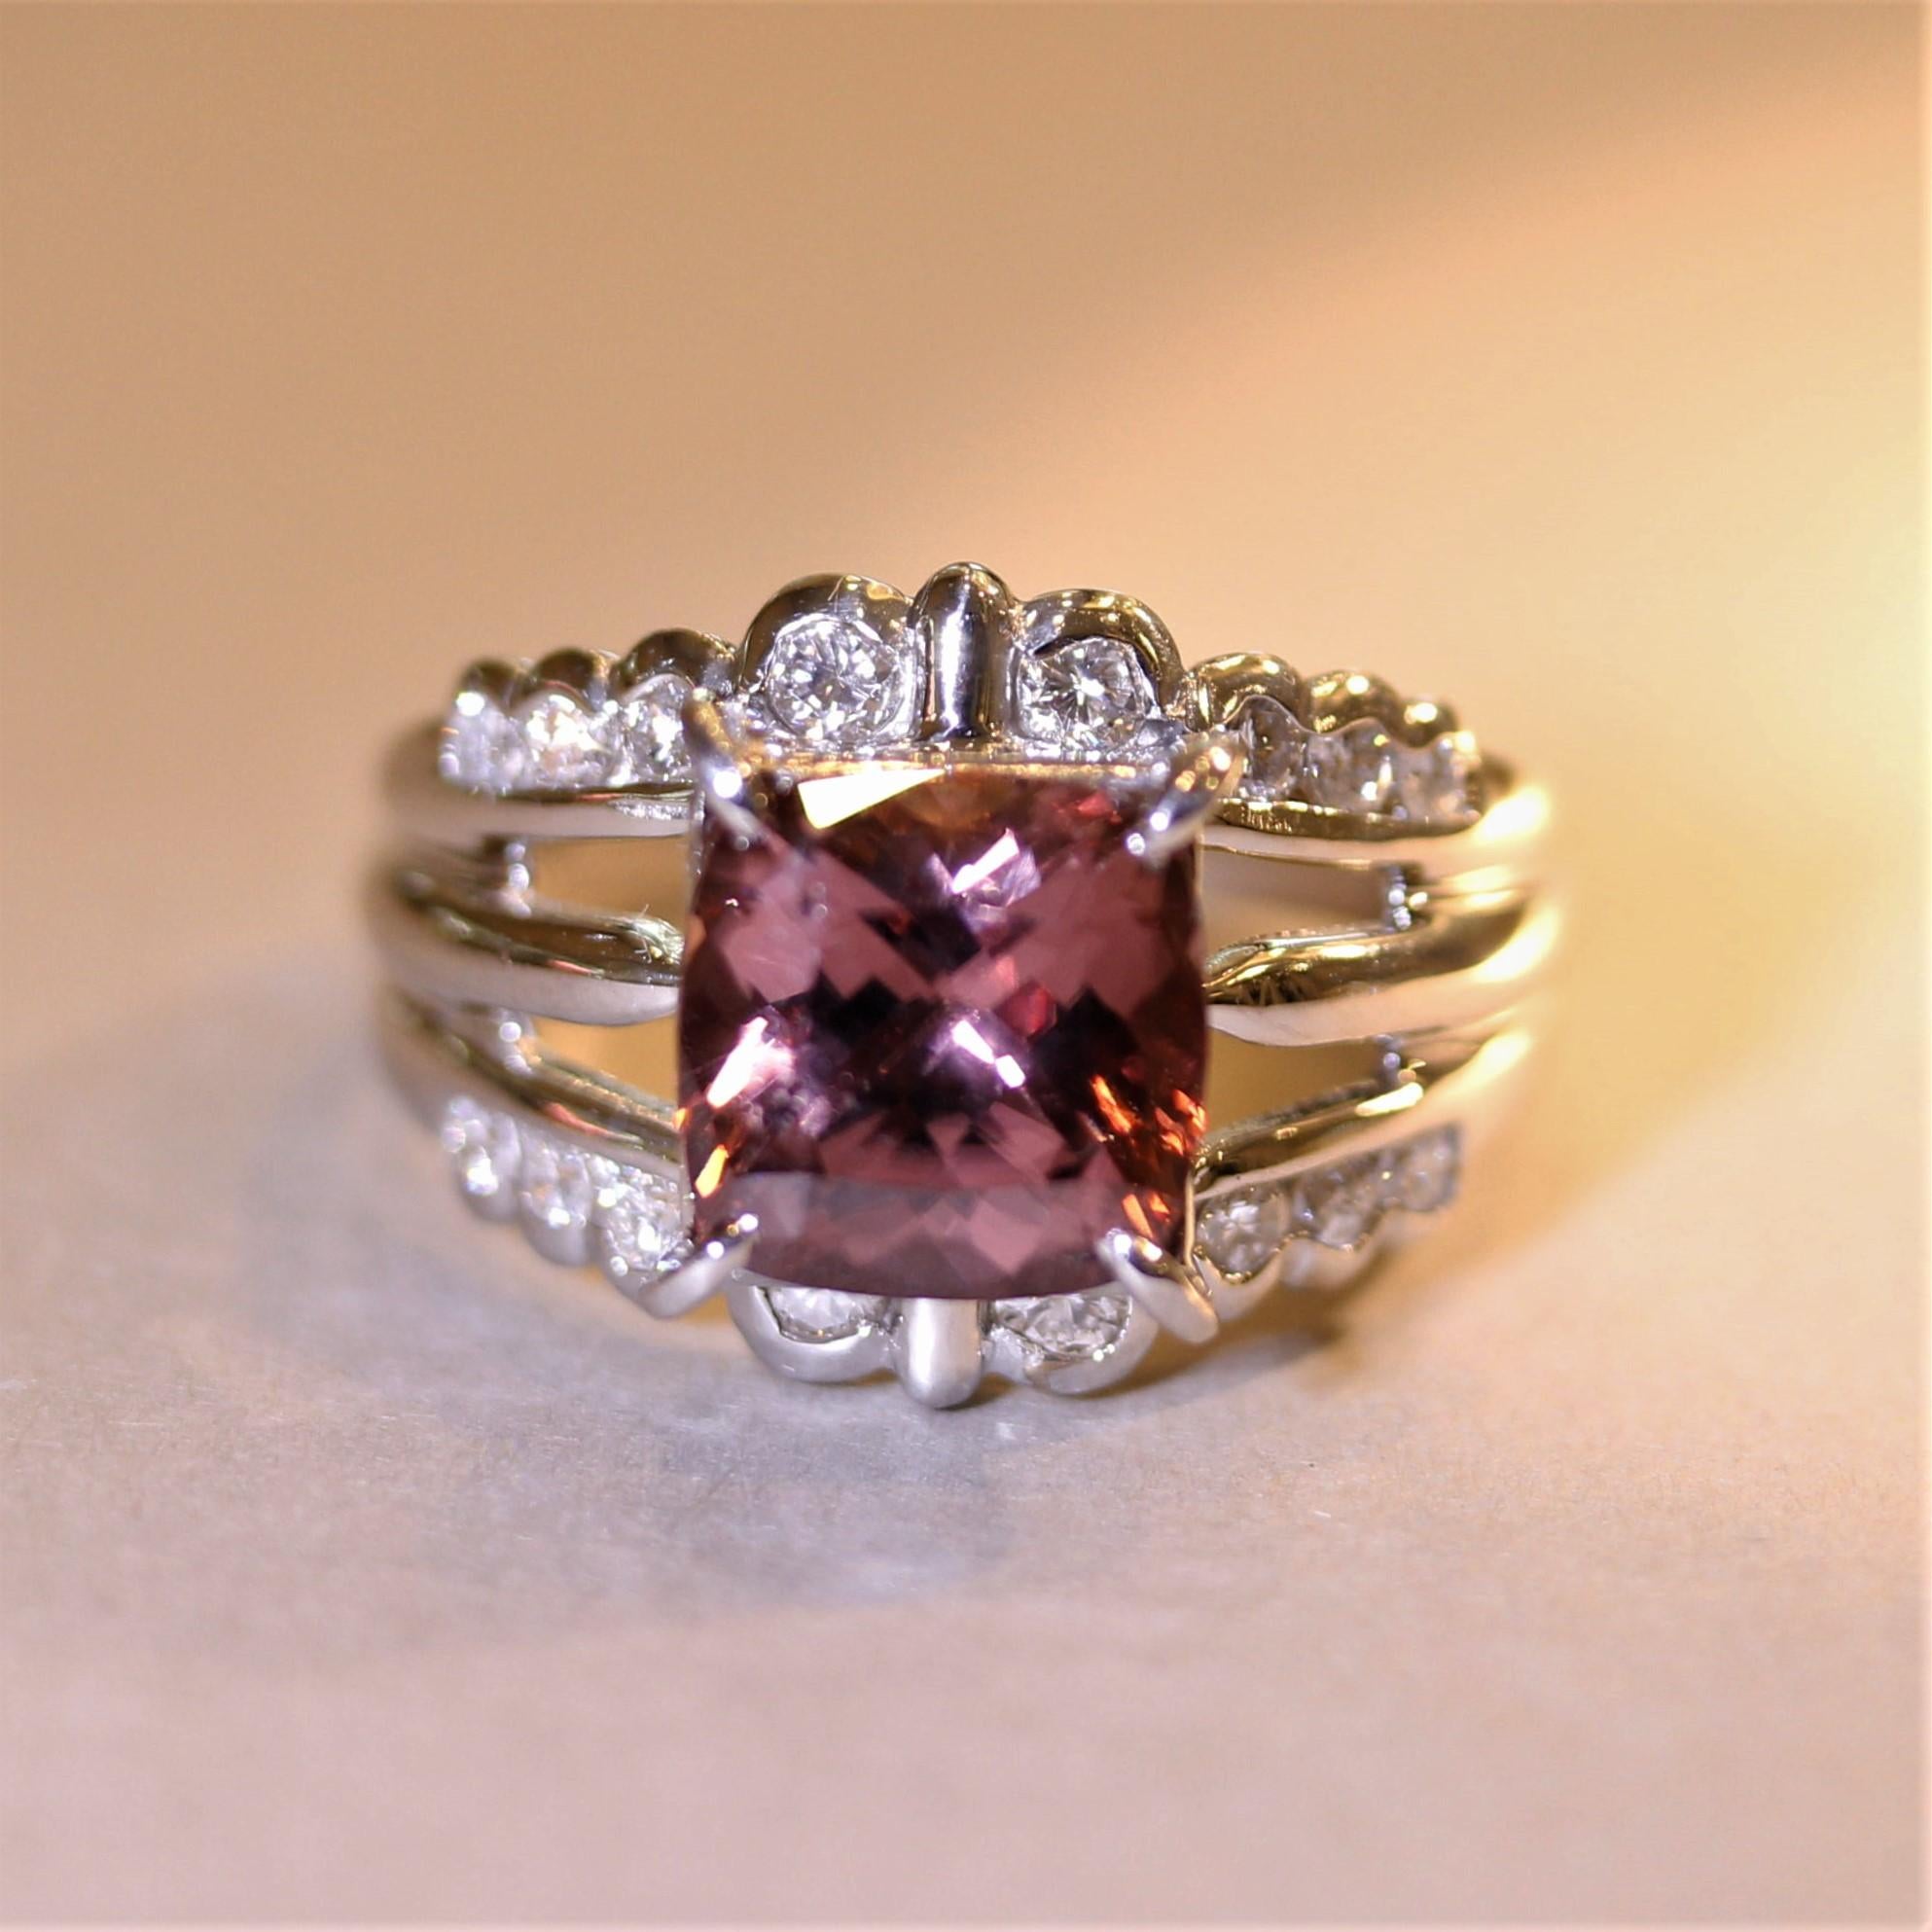 Une bague douce avec un zircon carré de 5,21 carats. Il a une couleur unique rose orangé avec une excellente brillance. Le zircon a une brillance et un éclat similaires à ceux du diamant ! Elle est rehaussée de 0,51 carats de diamants ronds de